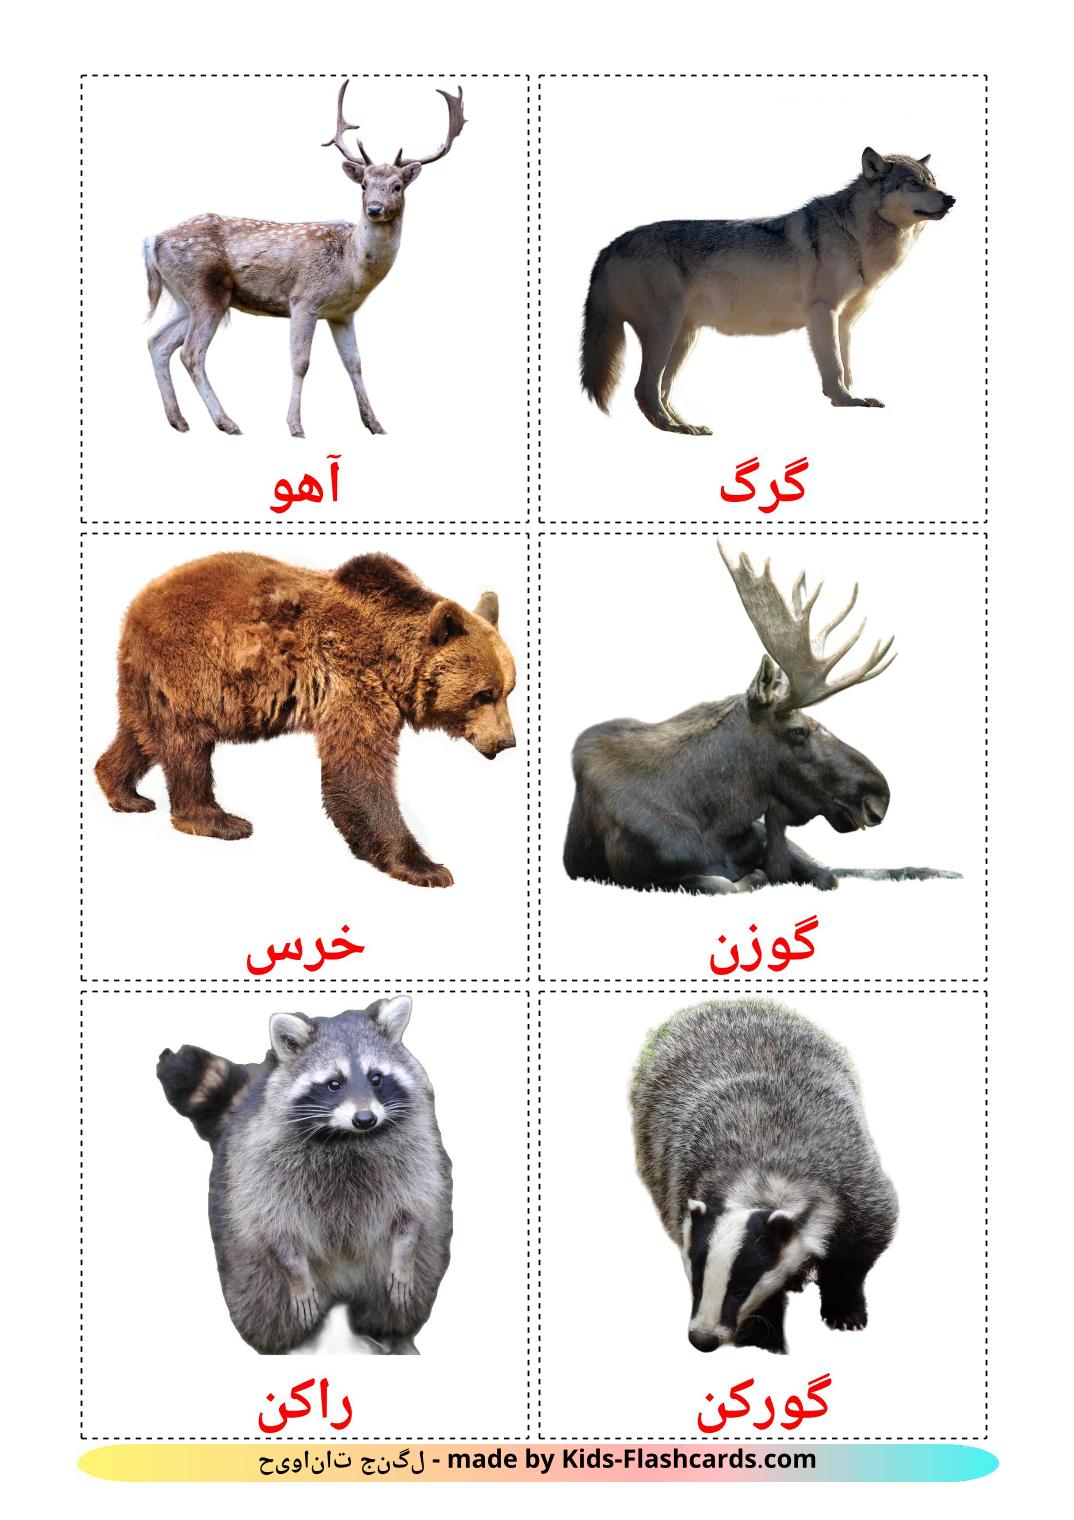 Animais da Floresta - 22 Flashcards persaes gratuitos para impressão